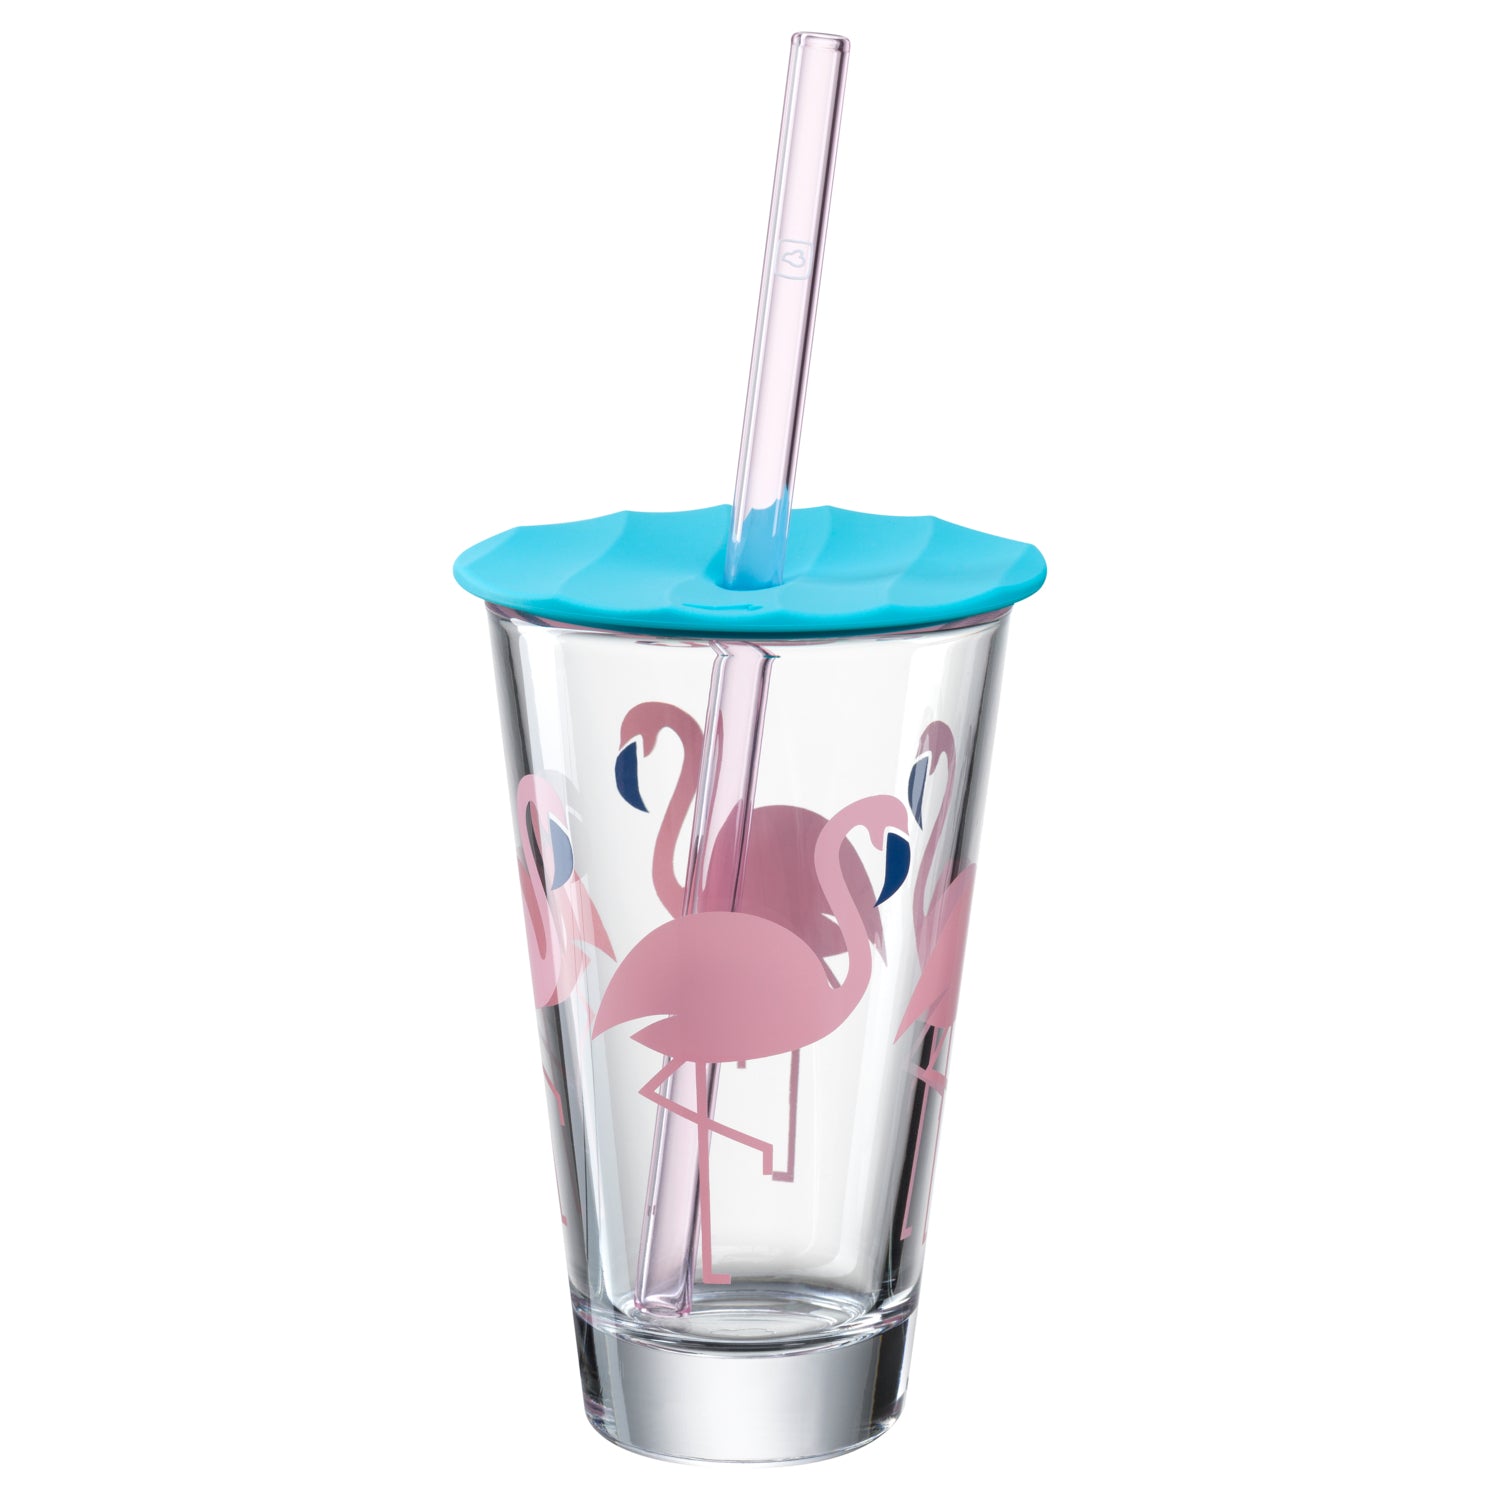 Trinkset AMALFI 3-teilig 300 ml Flamingo